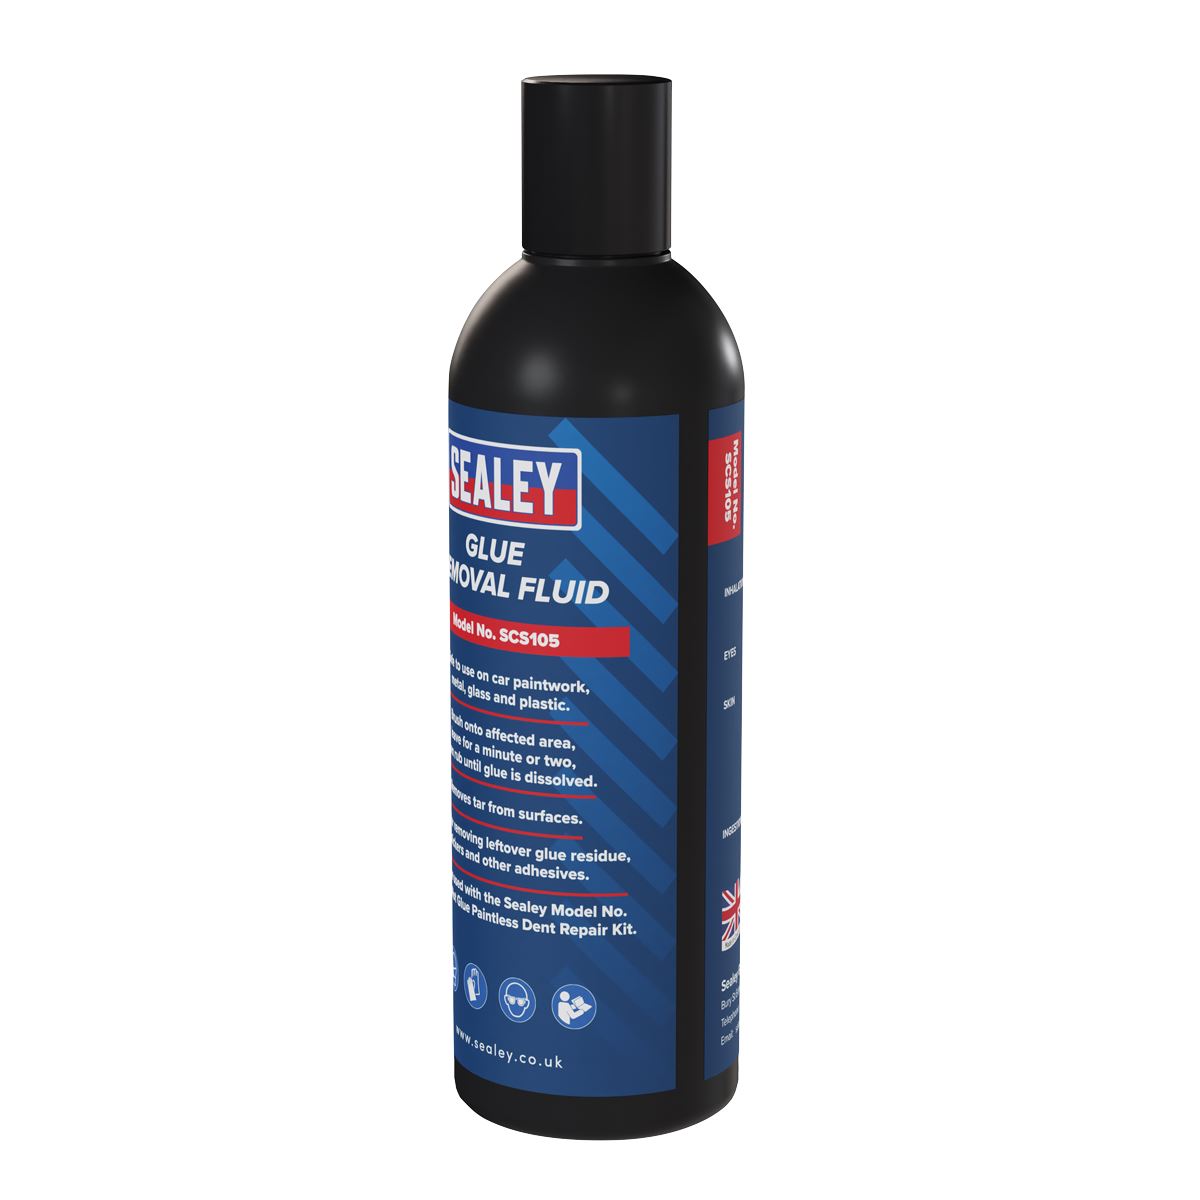 Sealey Glue Removal Fluid 200ml